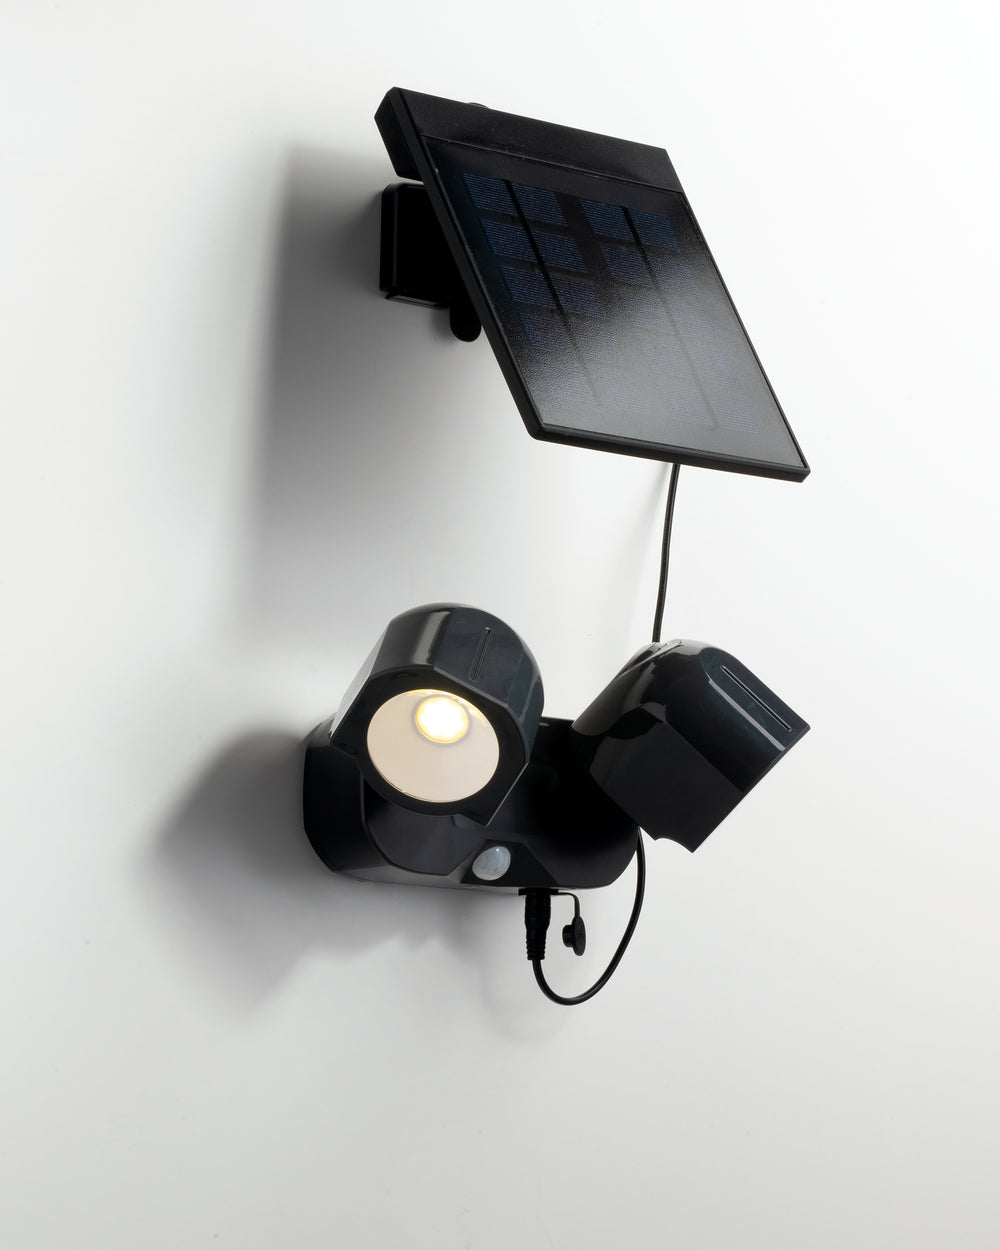 Proiettore per esterni Shiva con pannello solare e sensore di movimento inclusi, con duplice funzione a muro o portatile.